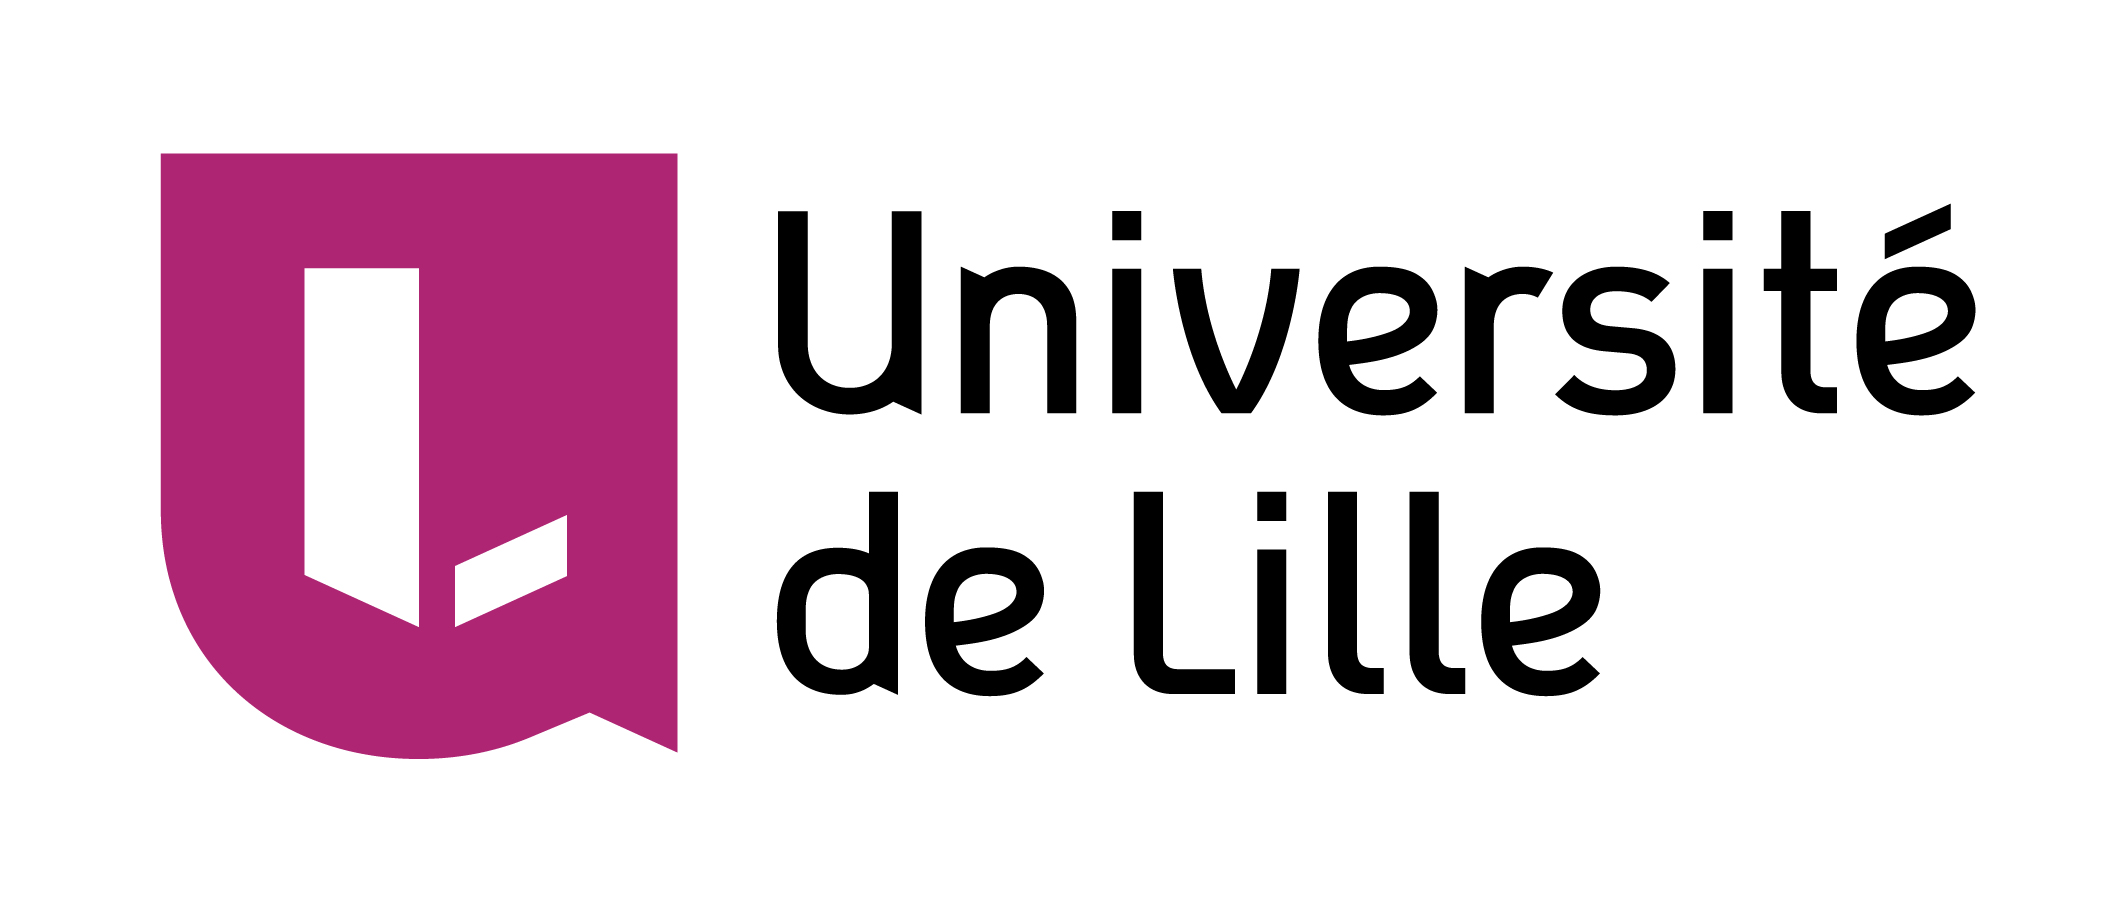 Université de Lille 
Les masters du département de mathématiques – Faculté Sciences et Technologies